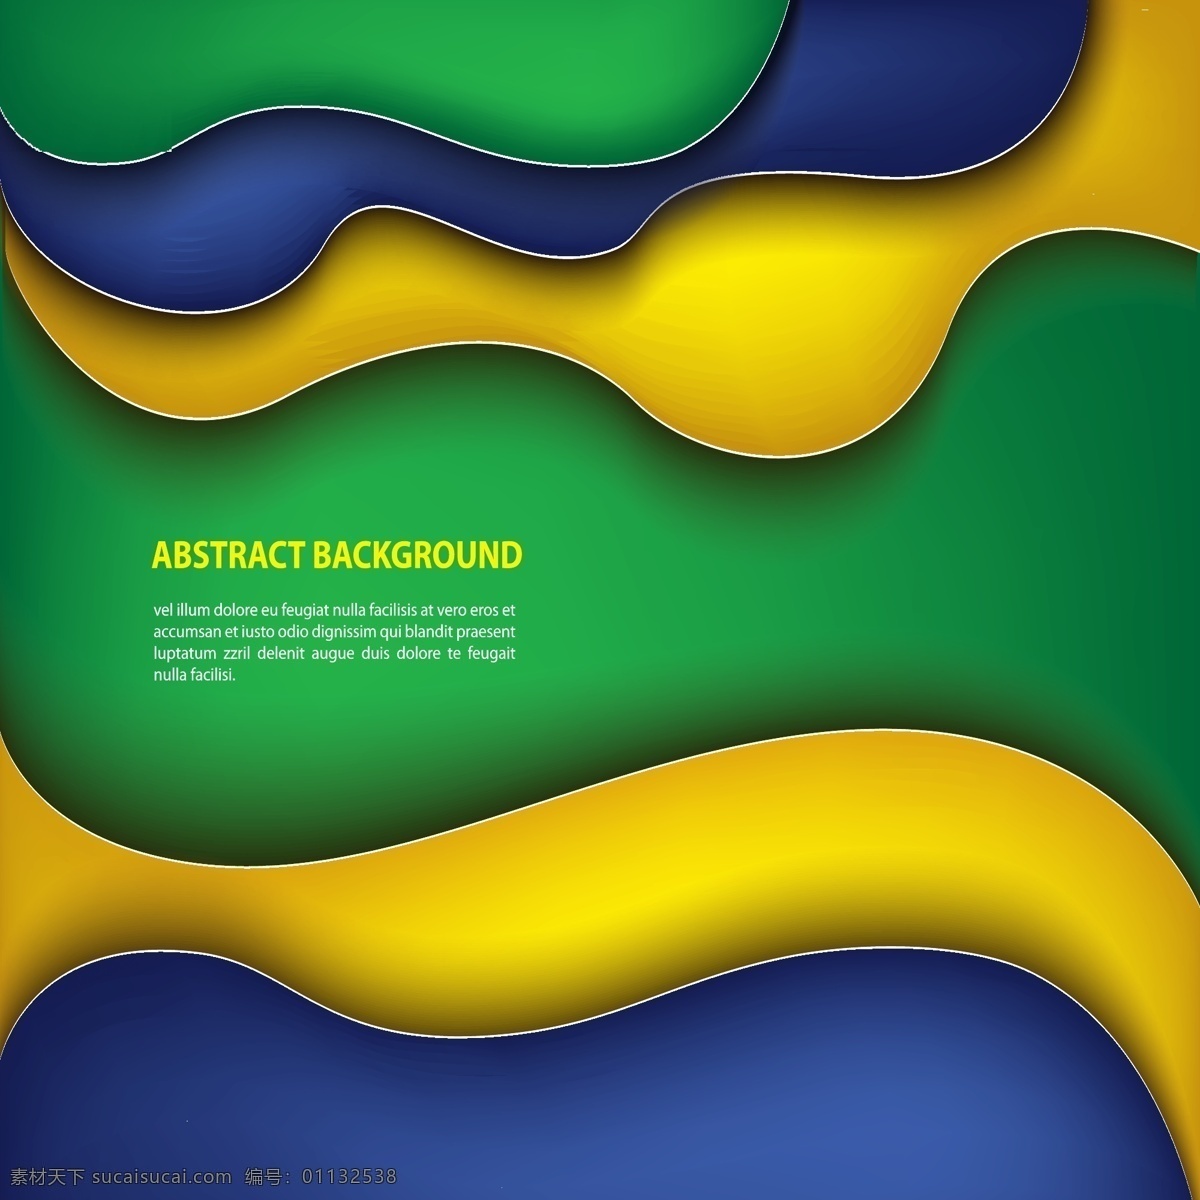 彩色 巴西 世界杯 背景 模板下载 巴西世界杯 足球 2014 体育运动 生活百科 矢量素材 绿色